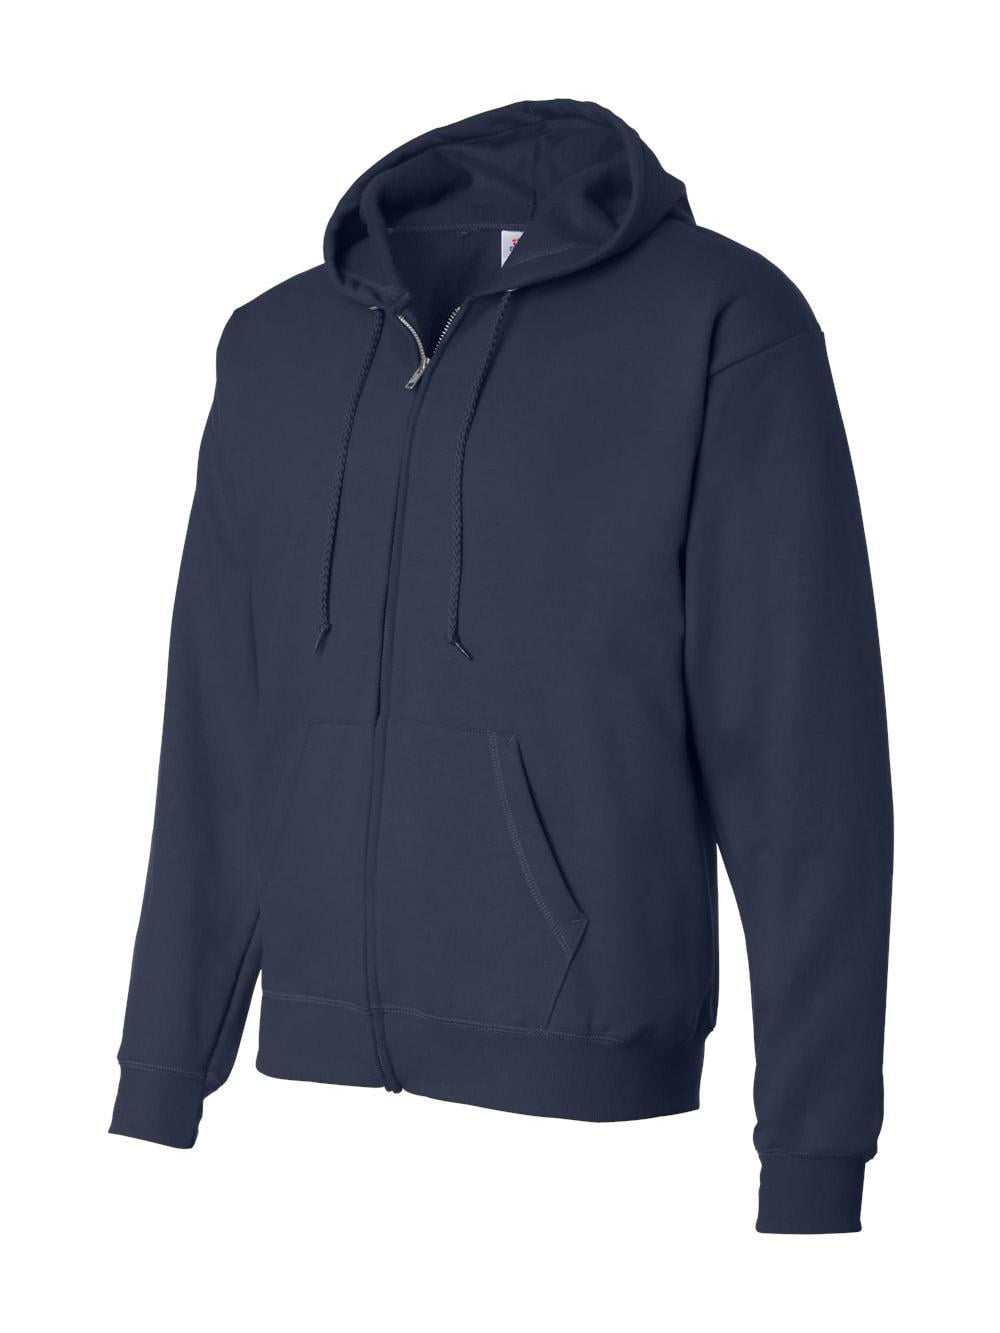 Hanes - Ecosmart Full-Zip Hooded Sweatshirt - P180 - Navy - Size: L ...